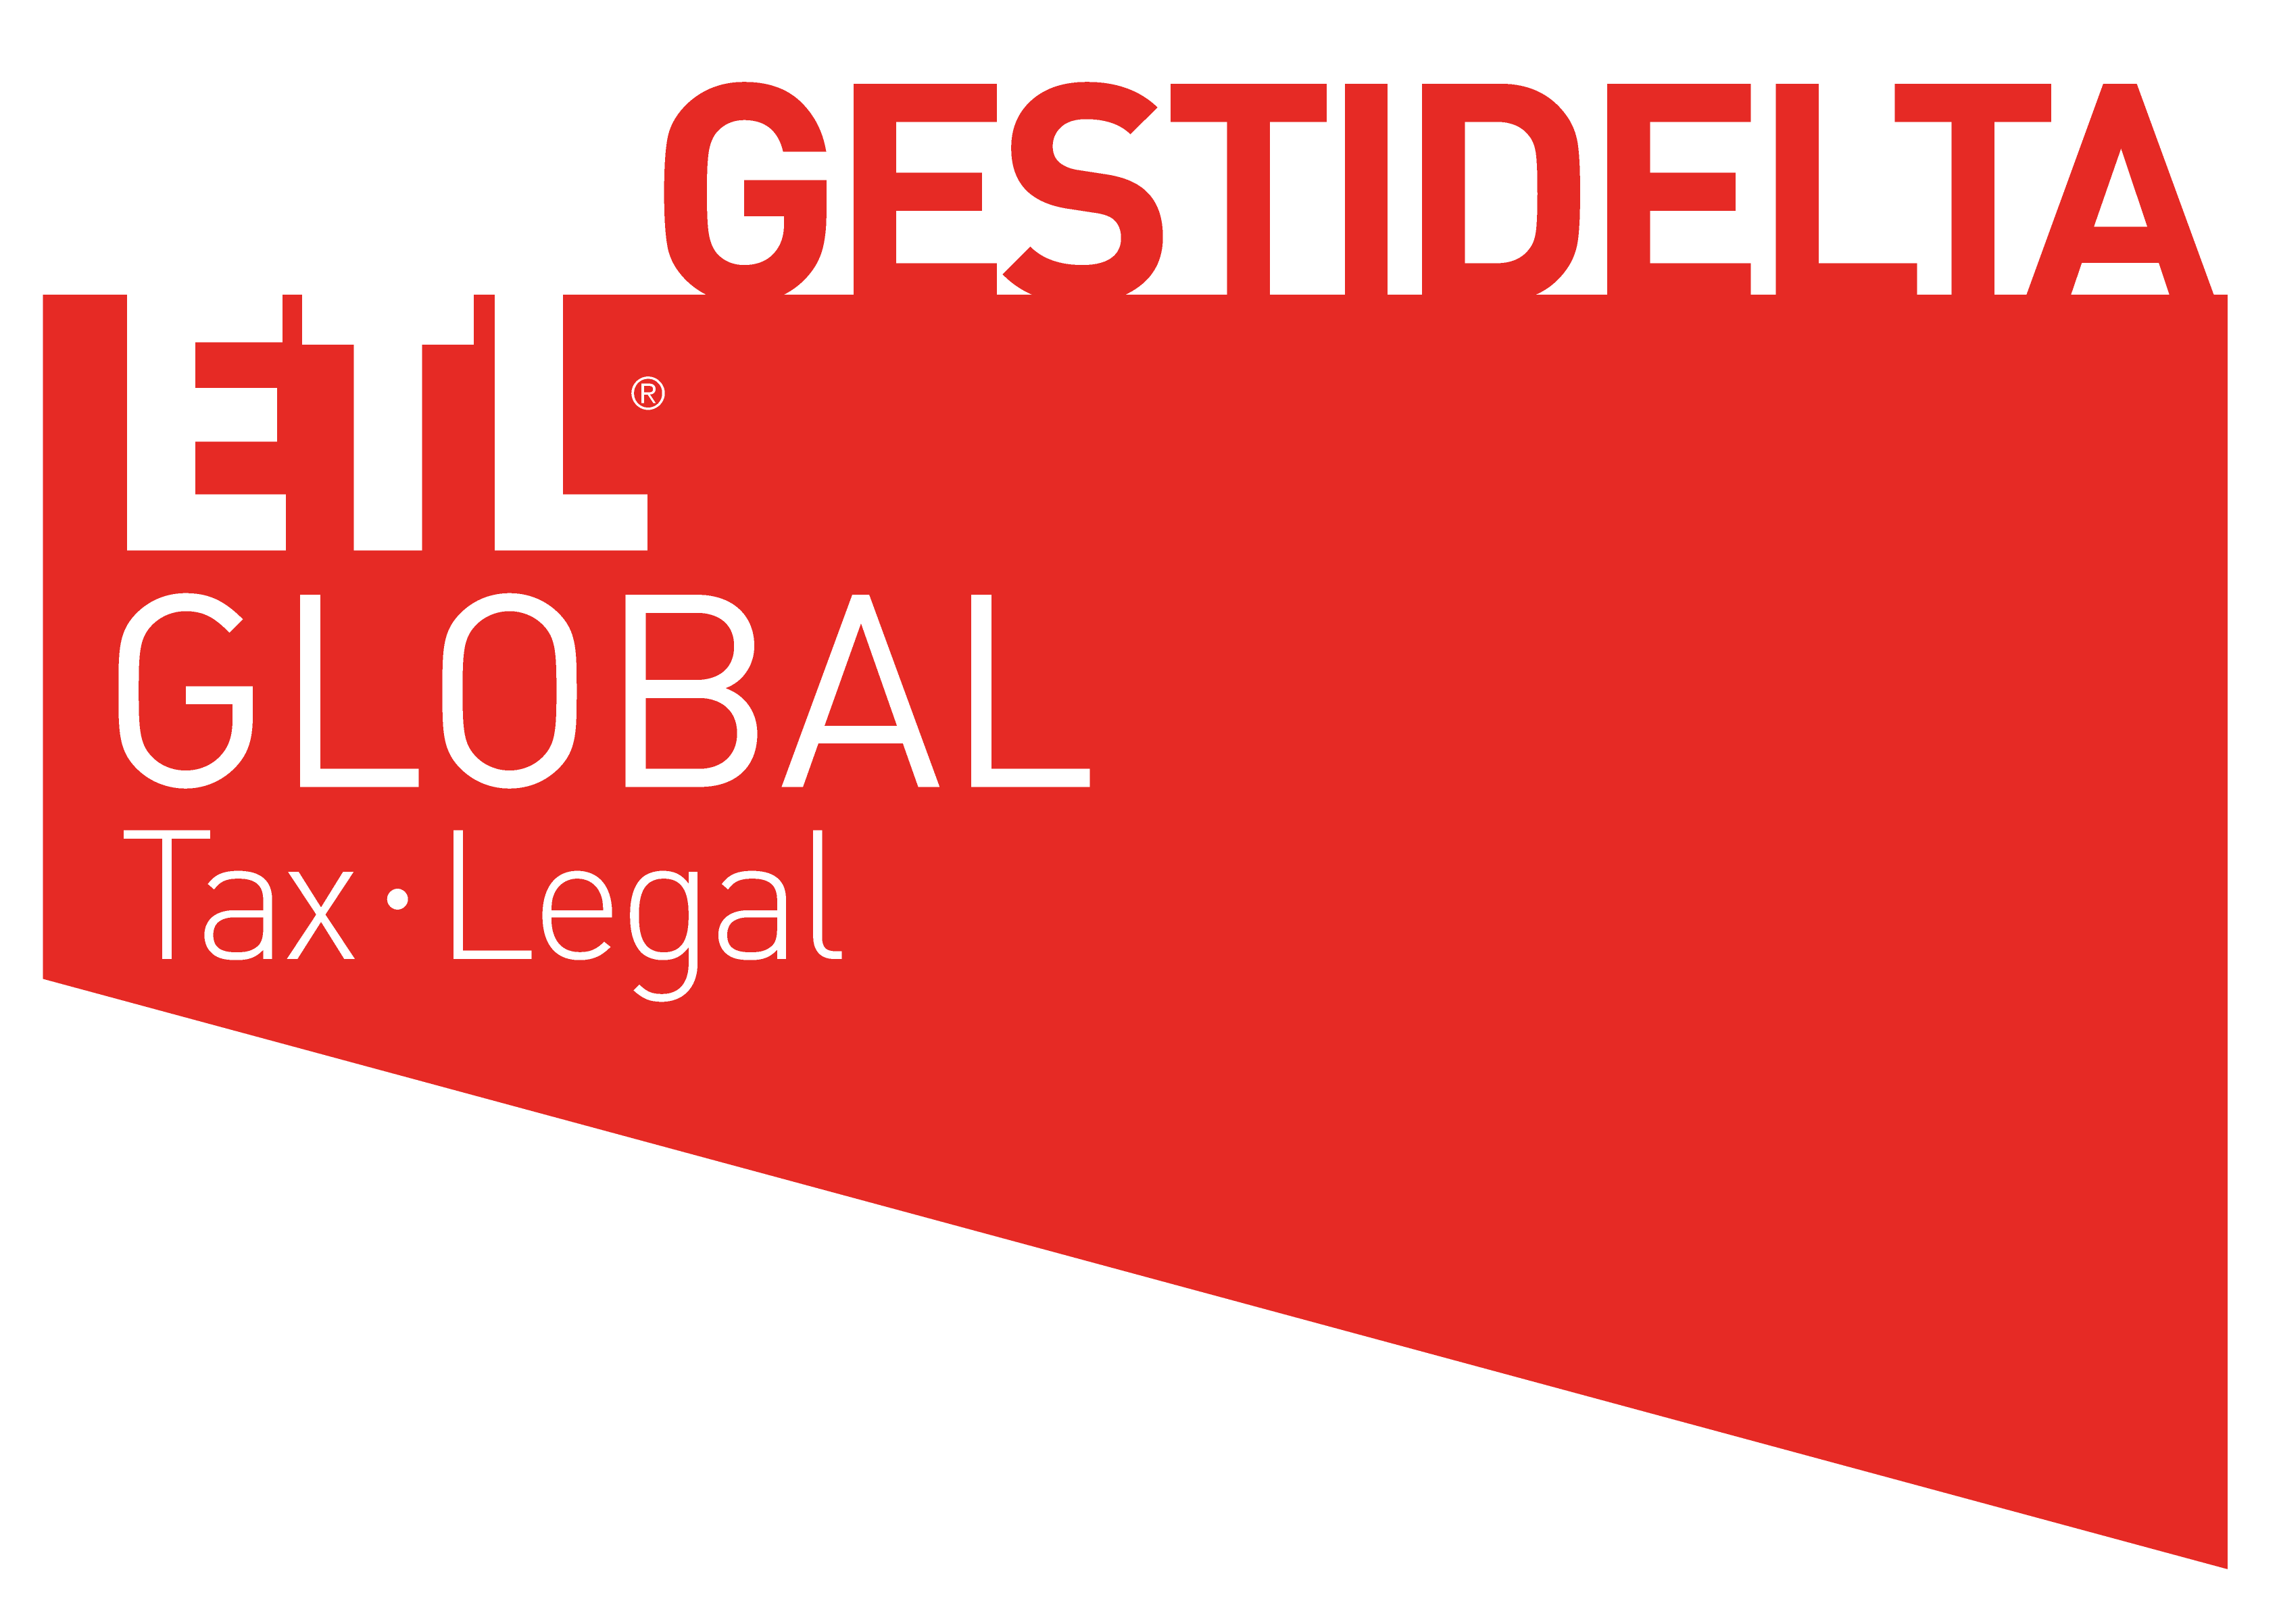 GESTIDELTA - ETL GLOBAL